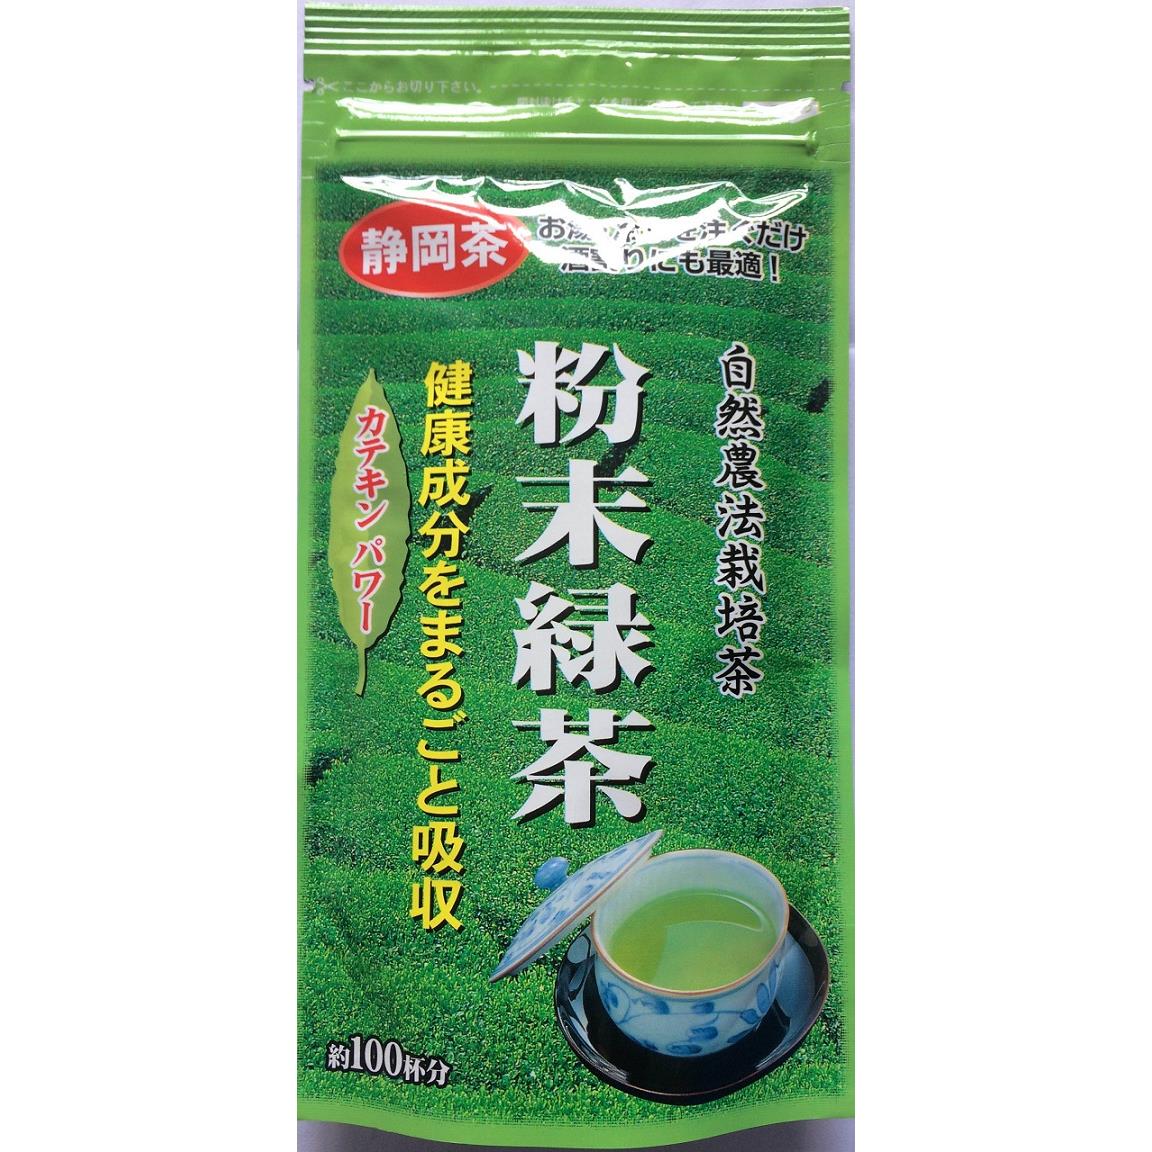 Matcha nhật bản( bột trà xanh Nhật Bản) 50g